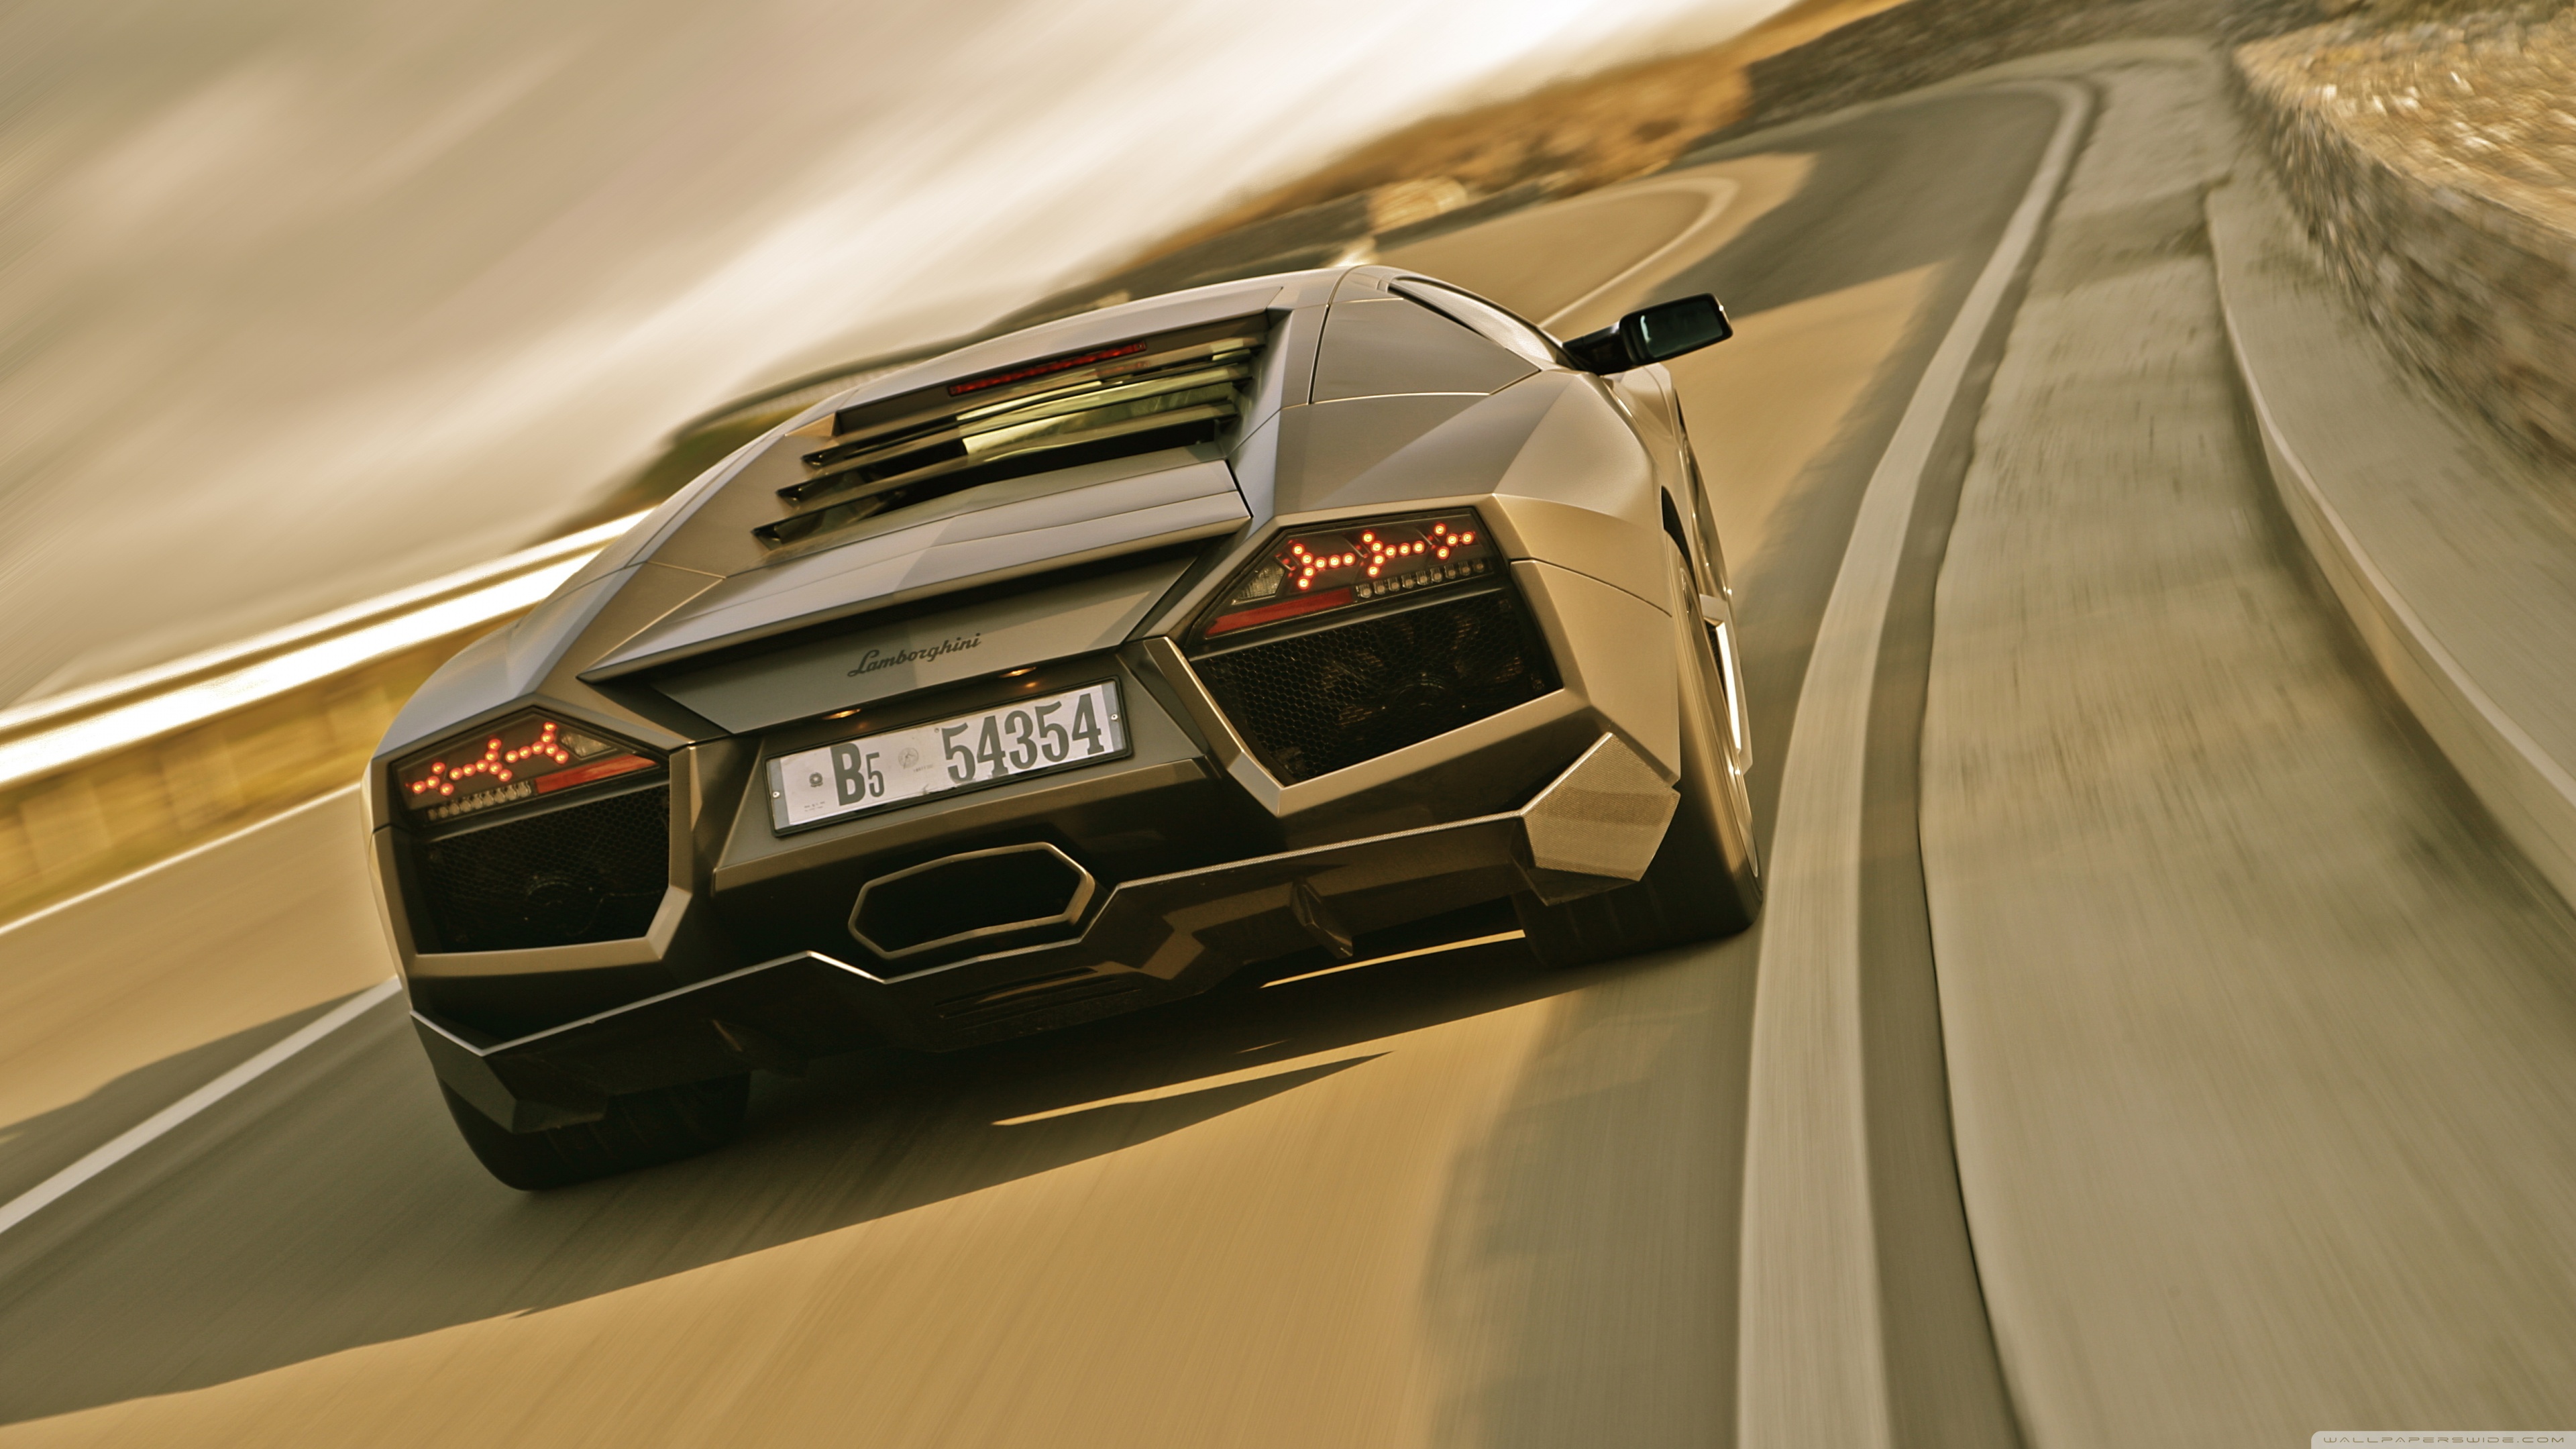 Lamborghini Reventon Wallpaper 44v5vcr